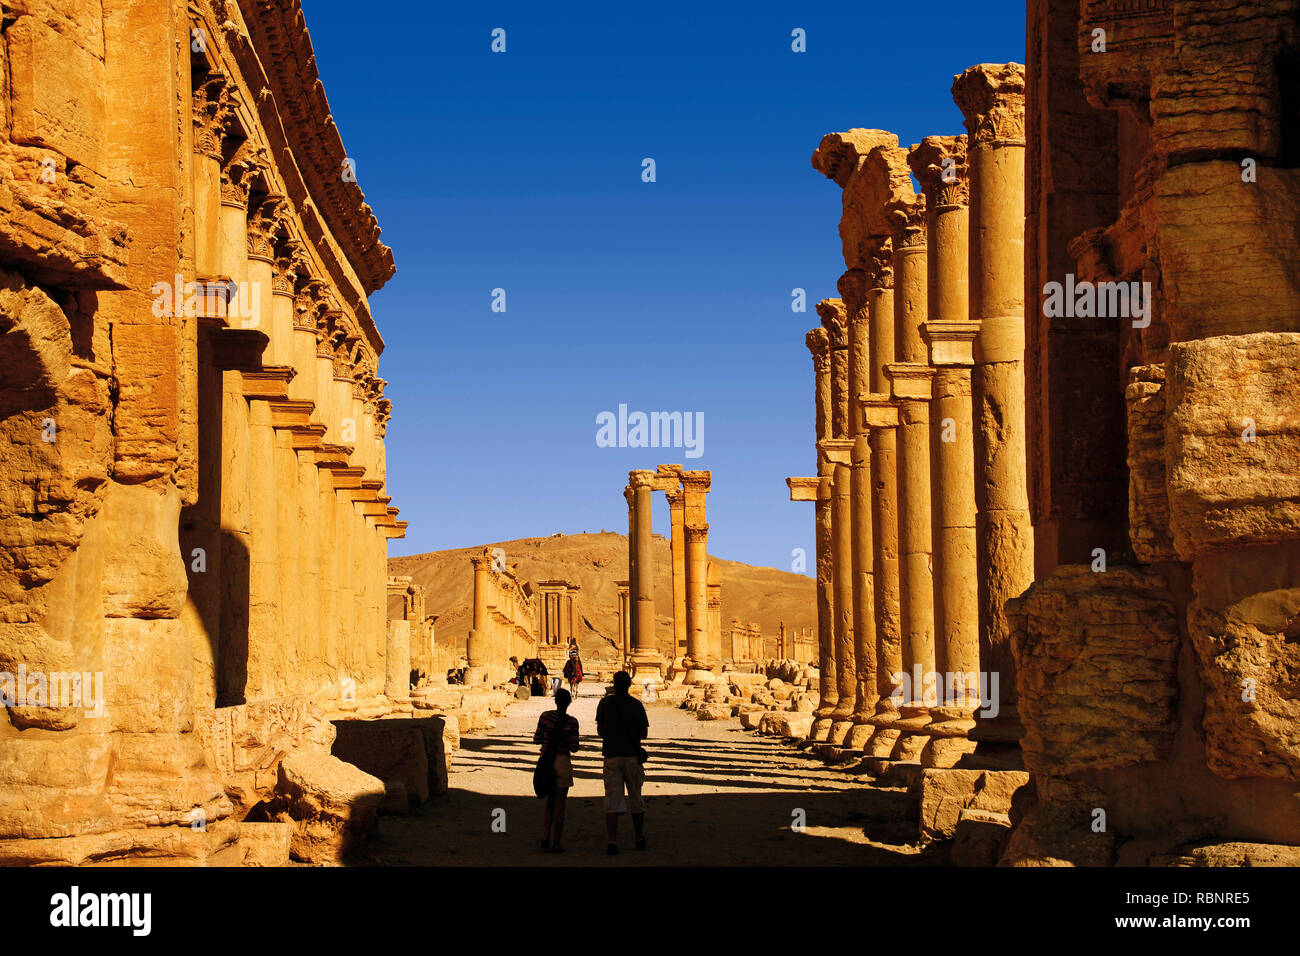 Ruines de l'ancienne ville gréco-romaine de Palmyre. La Syrie, au Moyen-Orient Banque D'Images